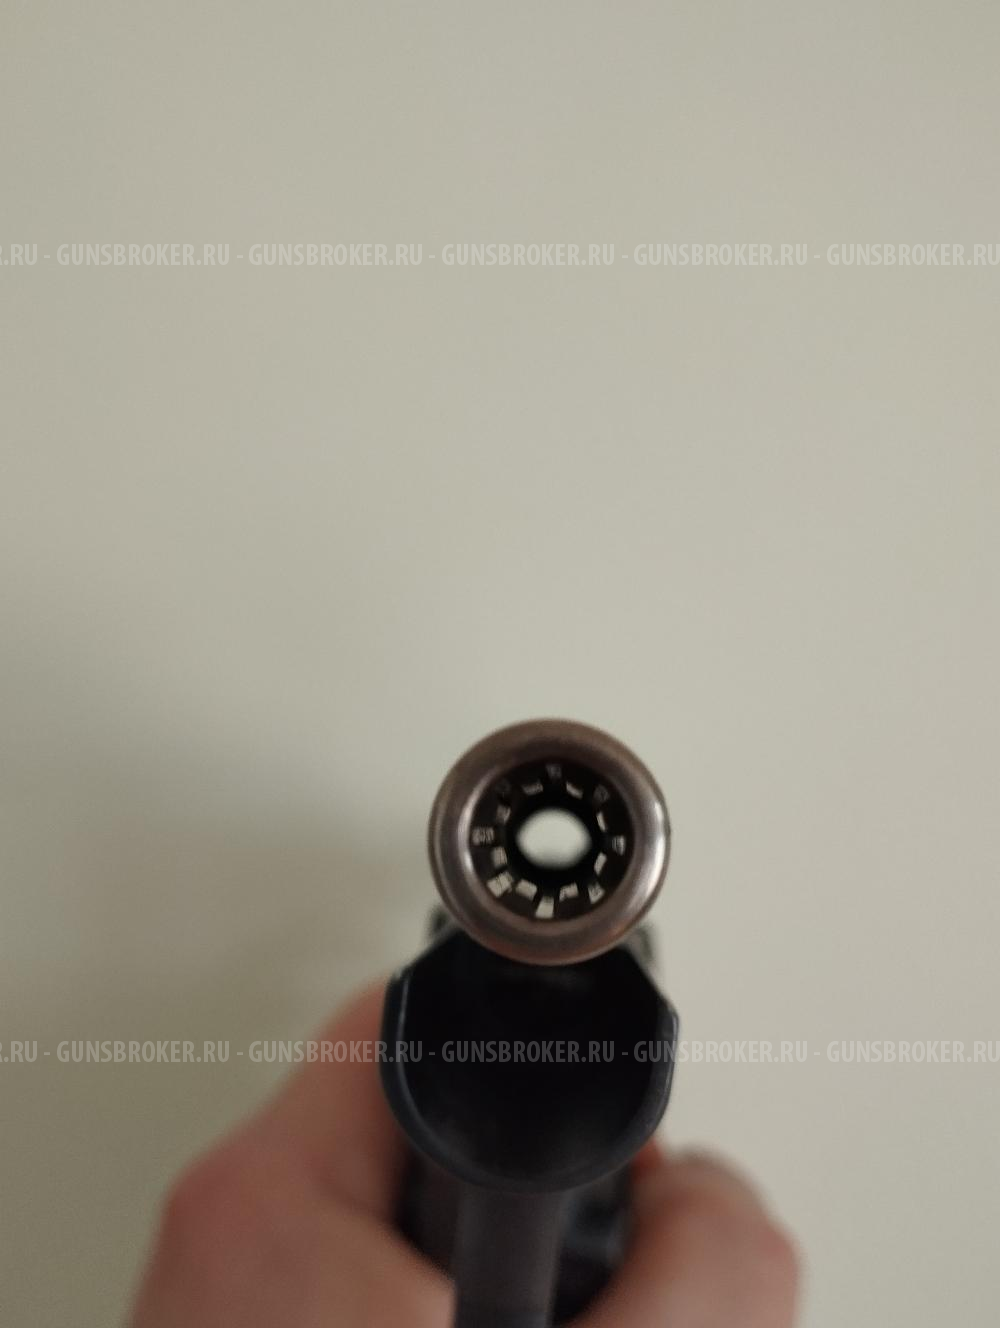 Гроза-021 9mm P.A.